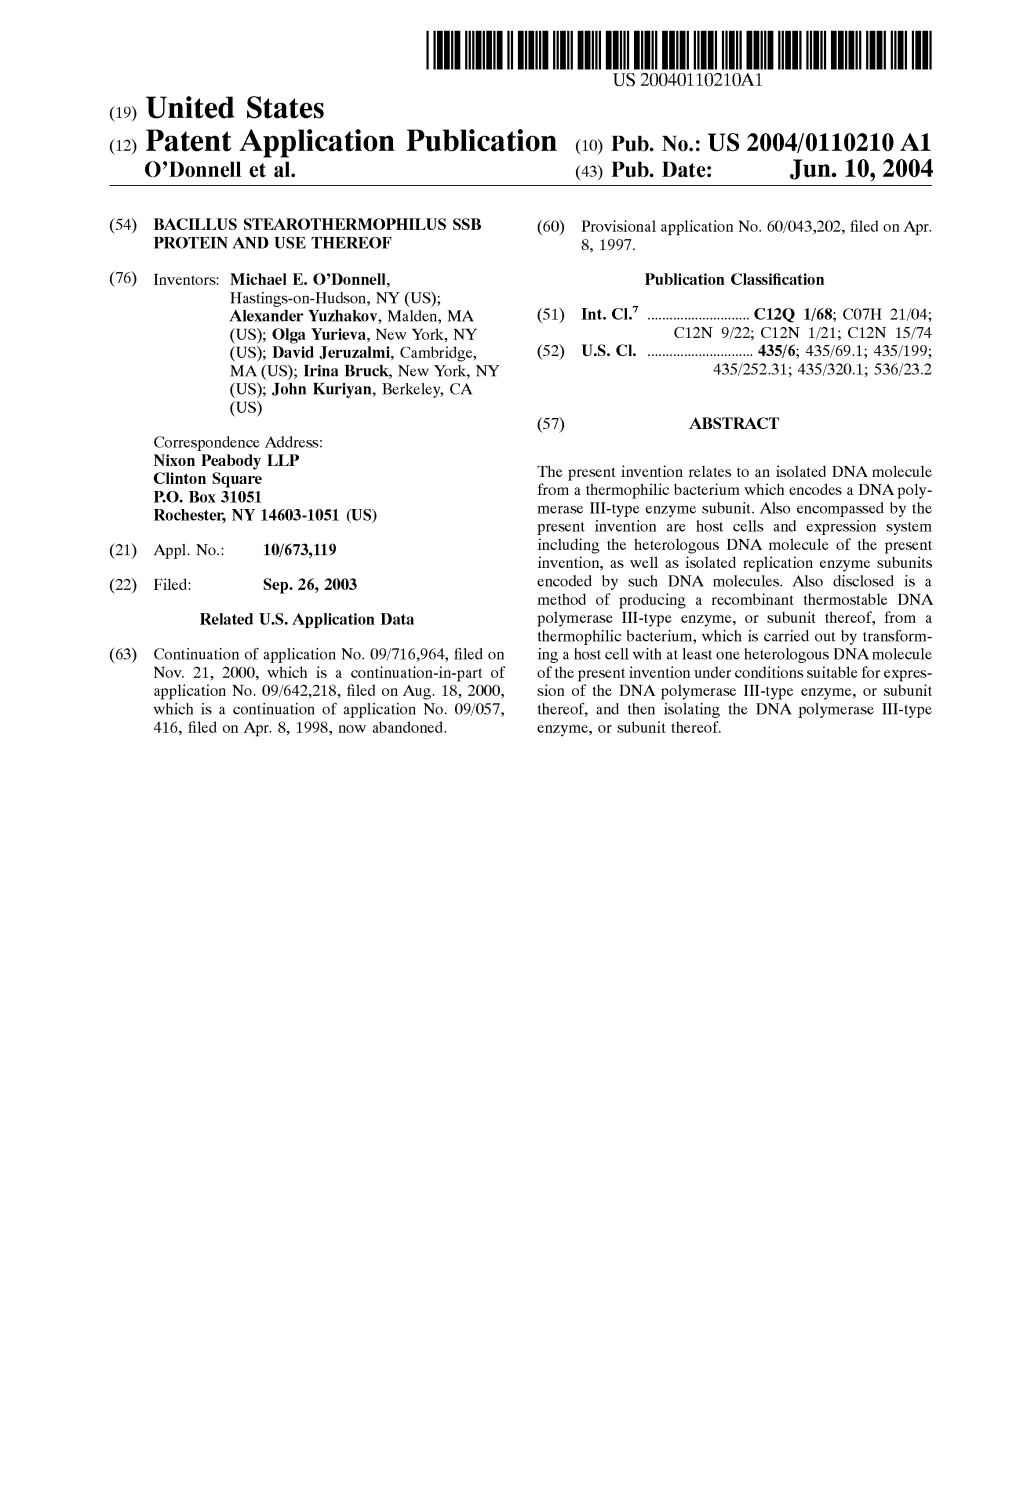 (12) Patent Application Publication (10) Pub. No.: US 2004/0110210 A1 O'donnell Et Al